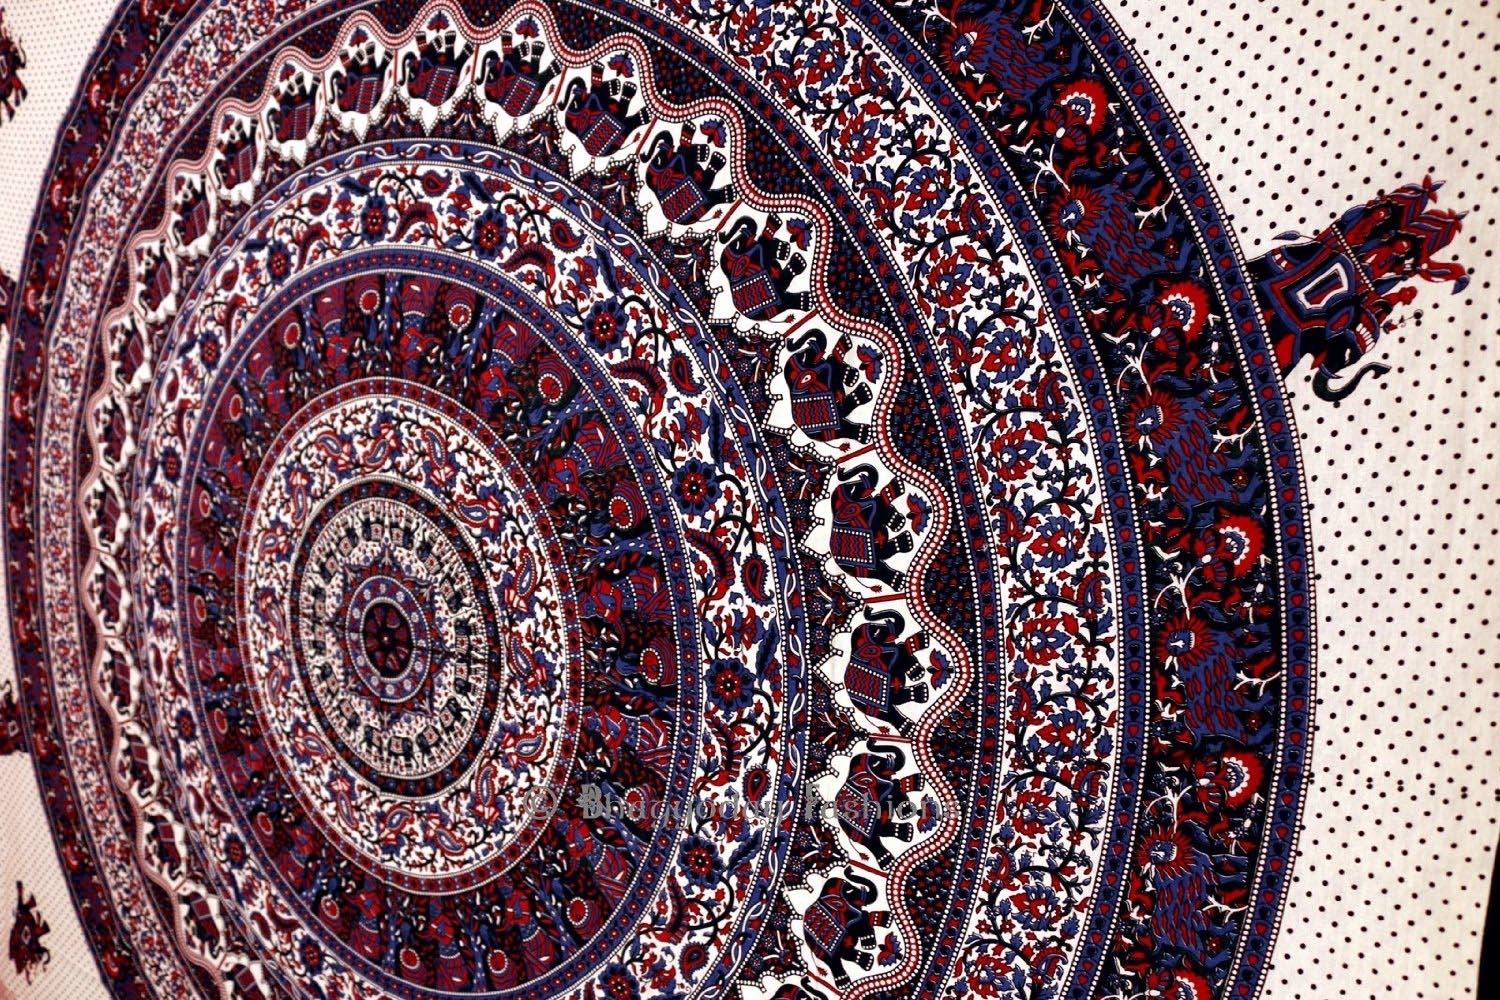 Mandala Wall Hanging Tapestry